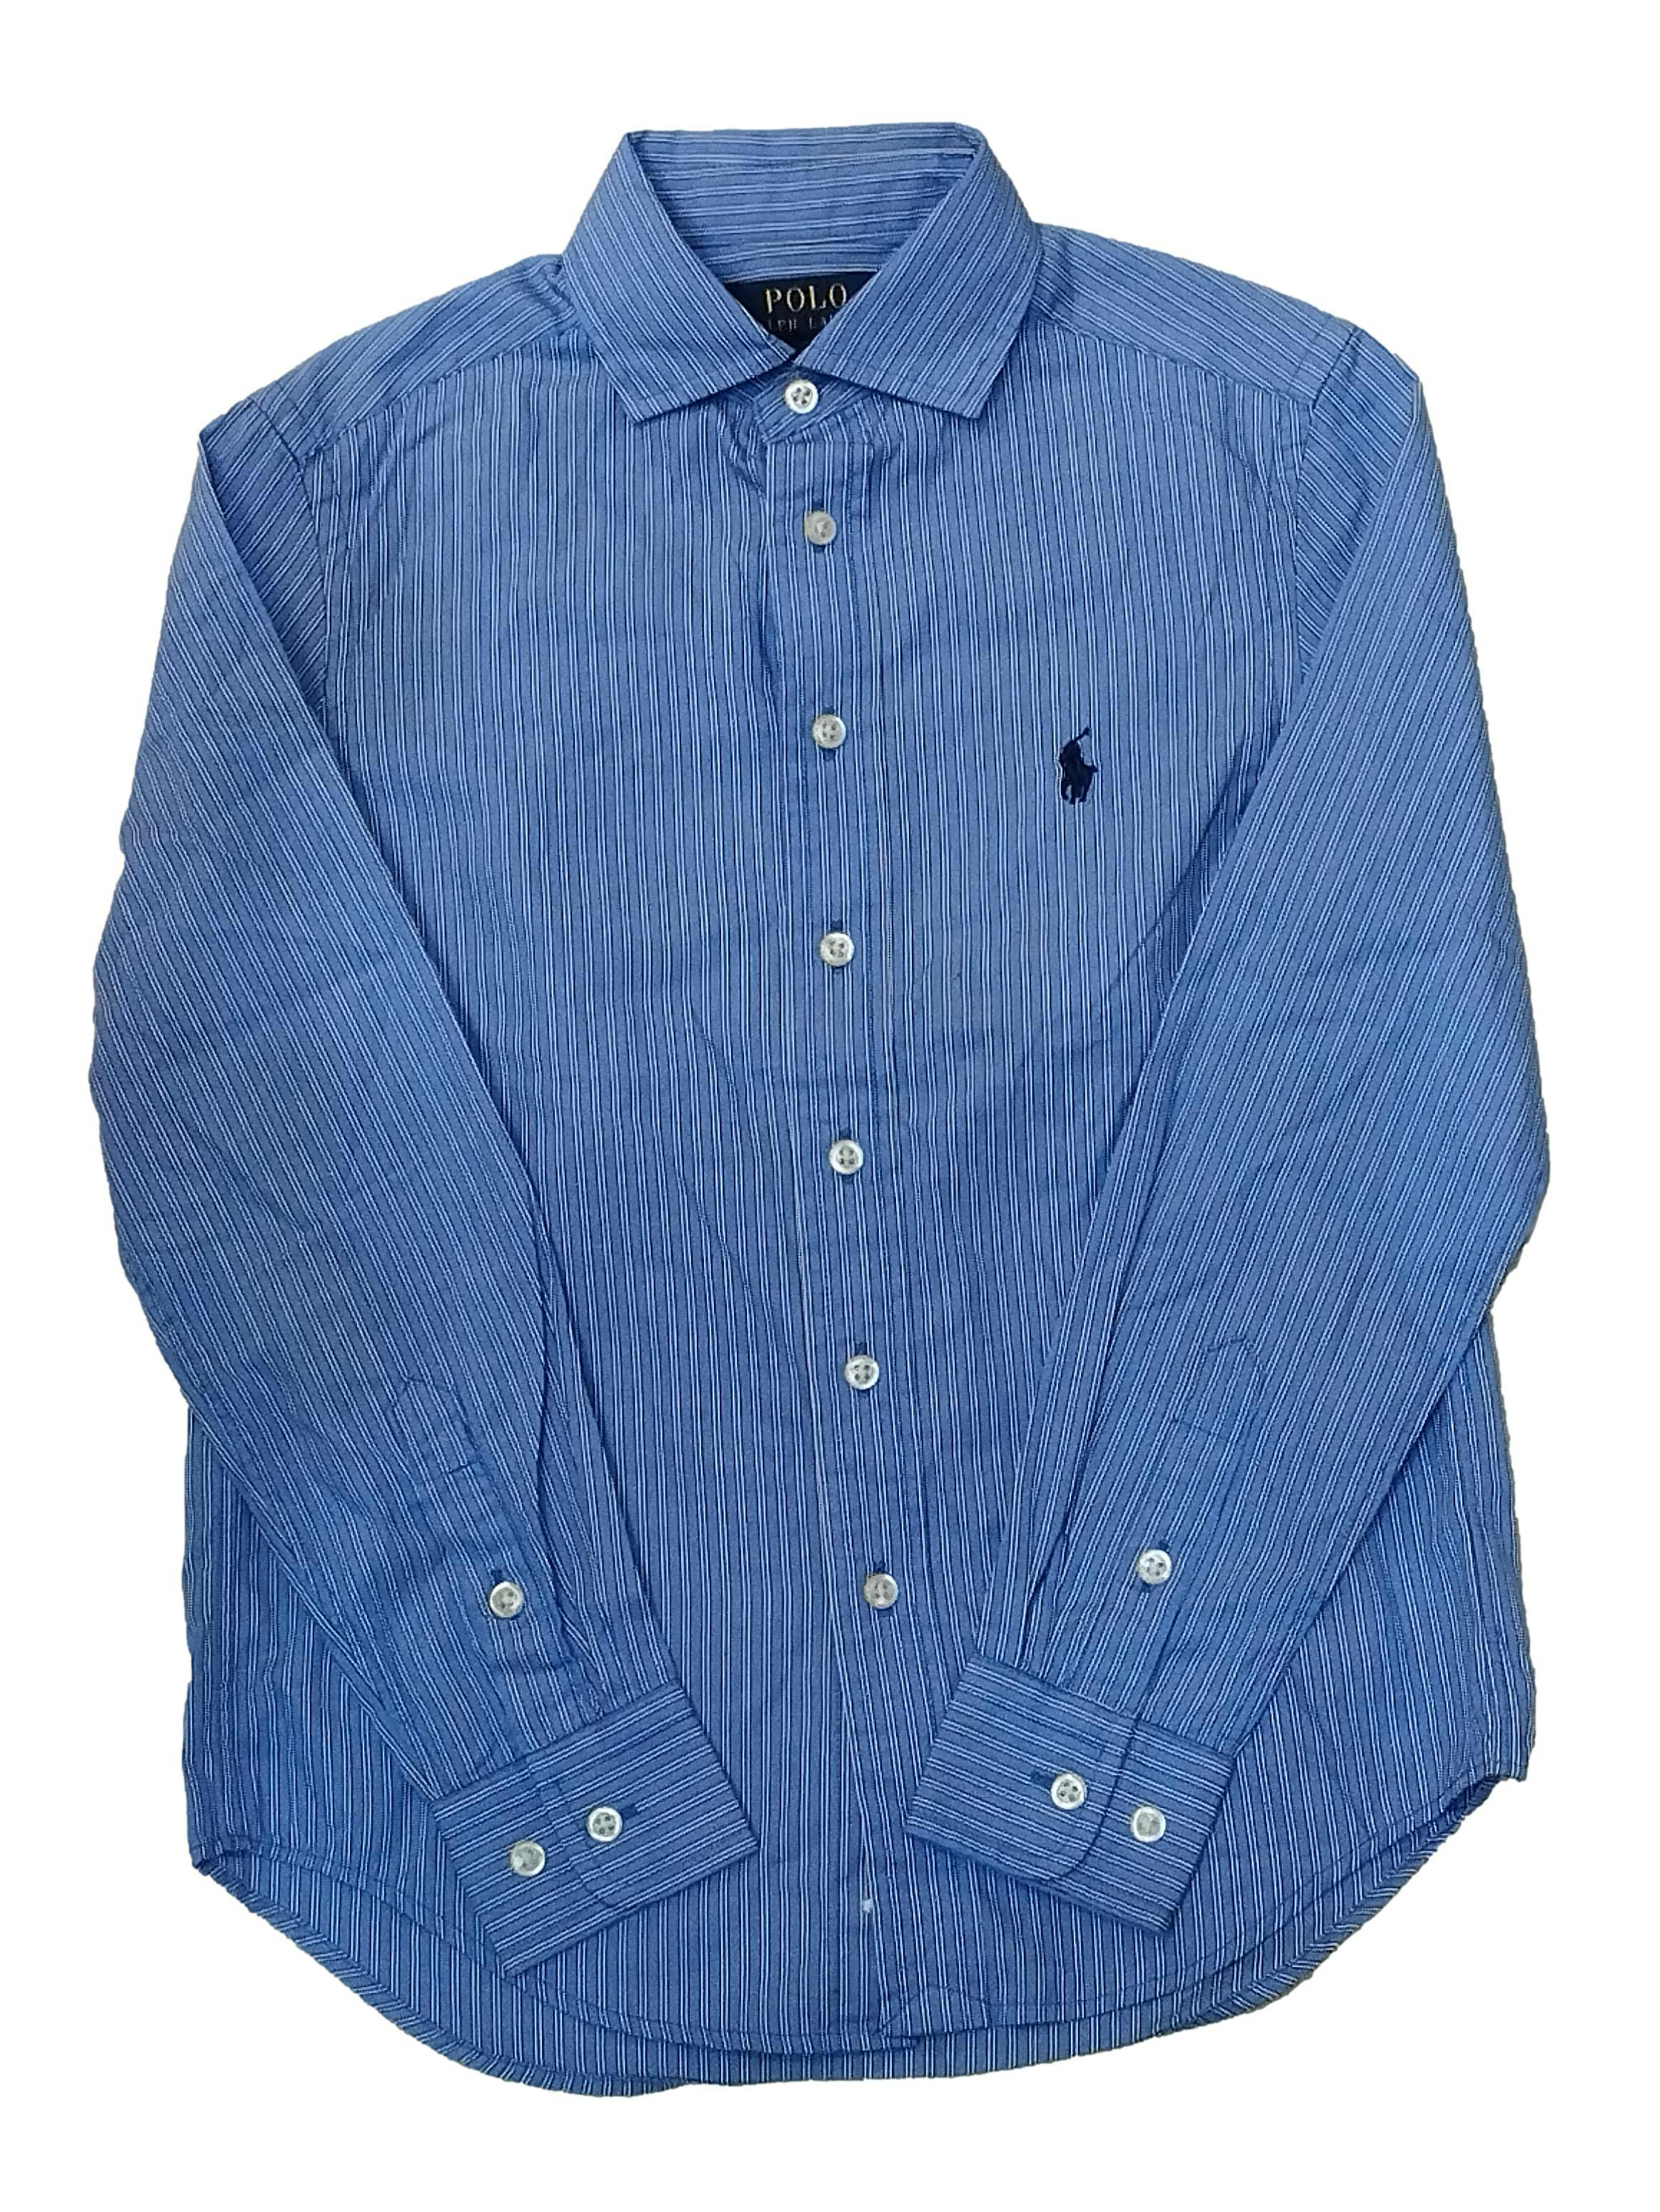 Camisa Ralph Lauren azul a rayas blanco, botones delanteros y en puños. Pecho: 80 cm, Largo: 51 cm